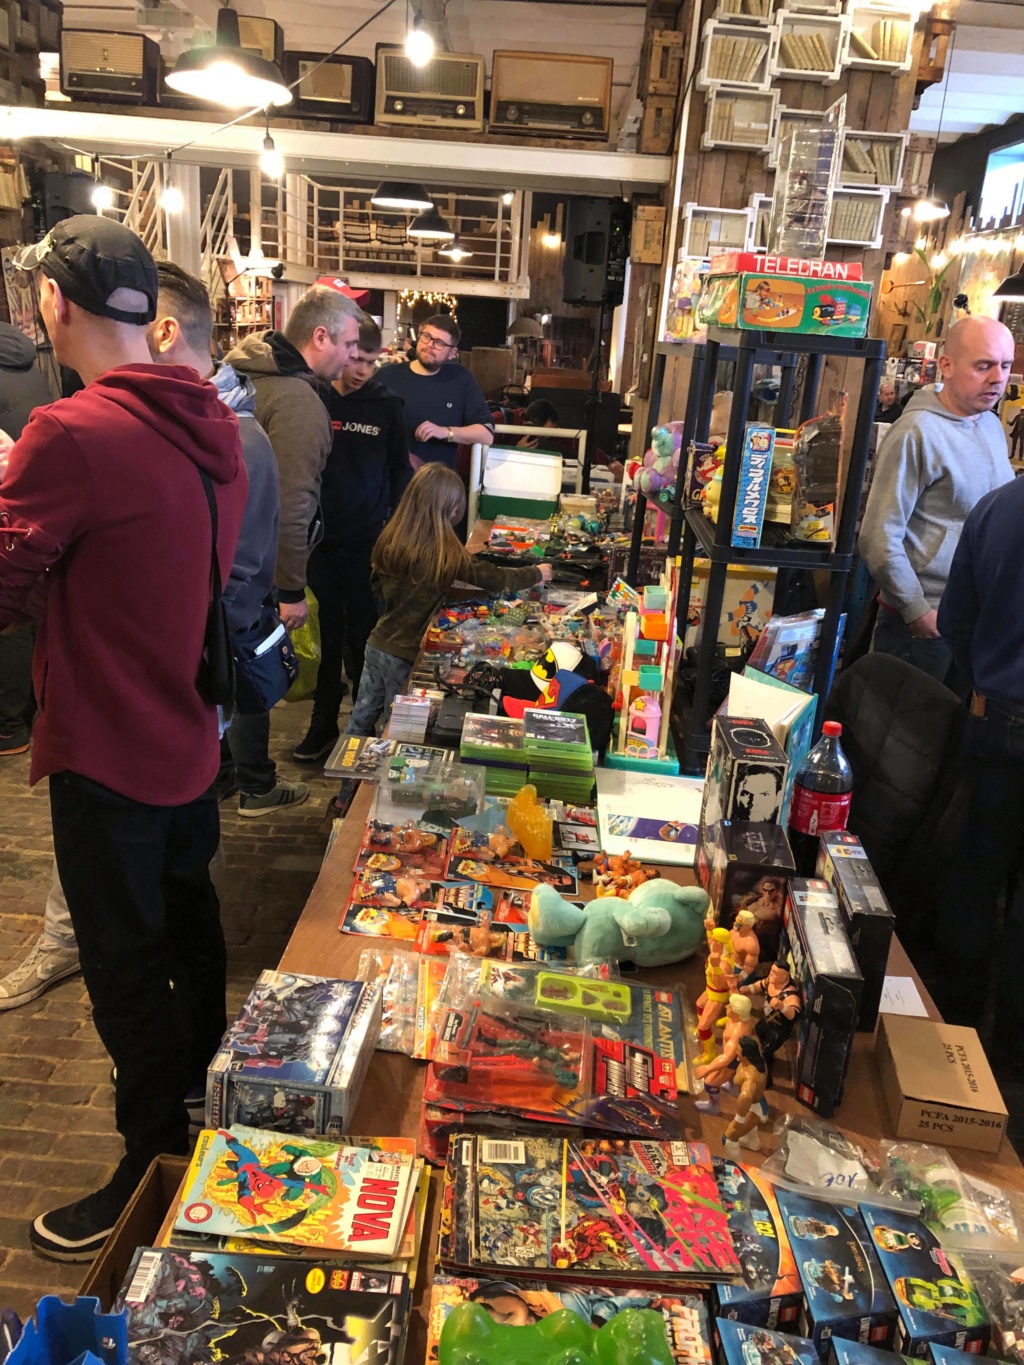 Bourse geek/retrogaming/jouets vintage IV - 2 et 3 mars 2019 à Tournai (Belgique) 53030411